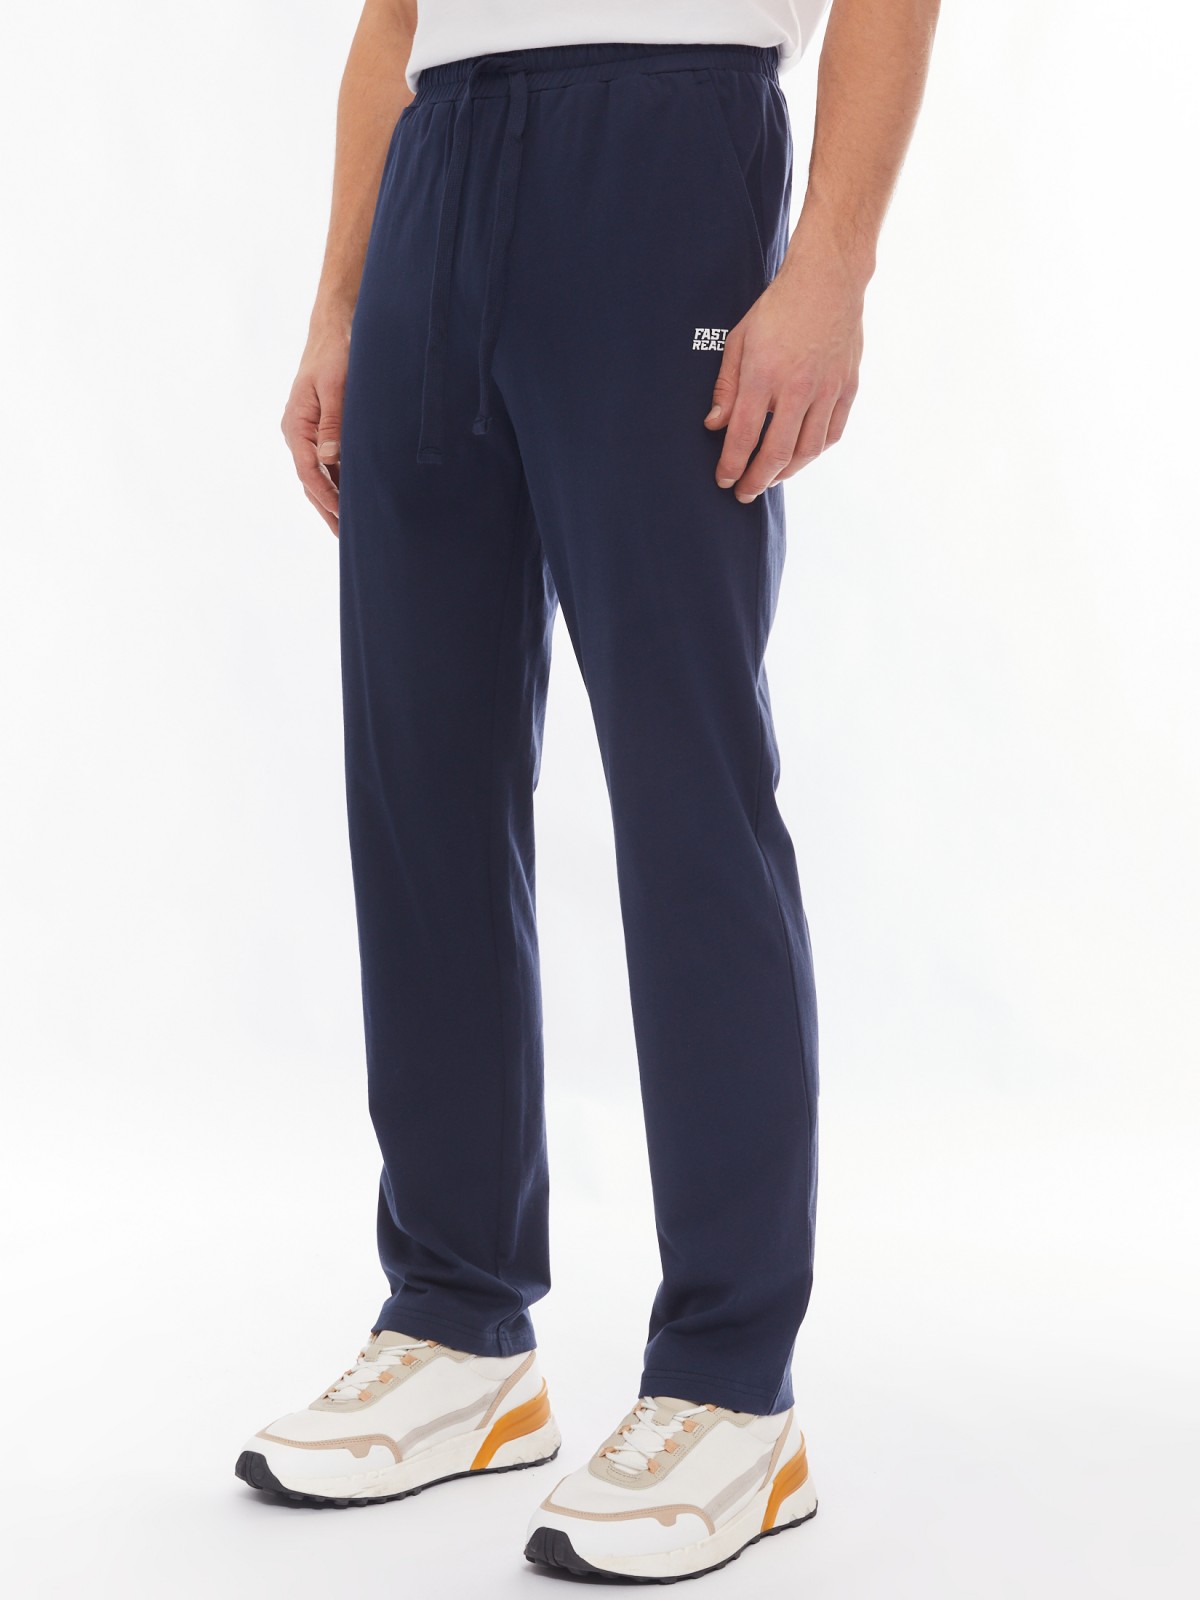 Трикотажные брюки из хлопка в спортивном стиле zolla 014137675012, цвет синий, размер S - фото 3